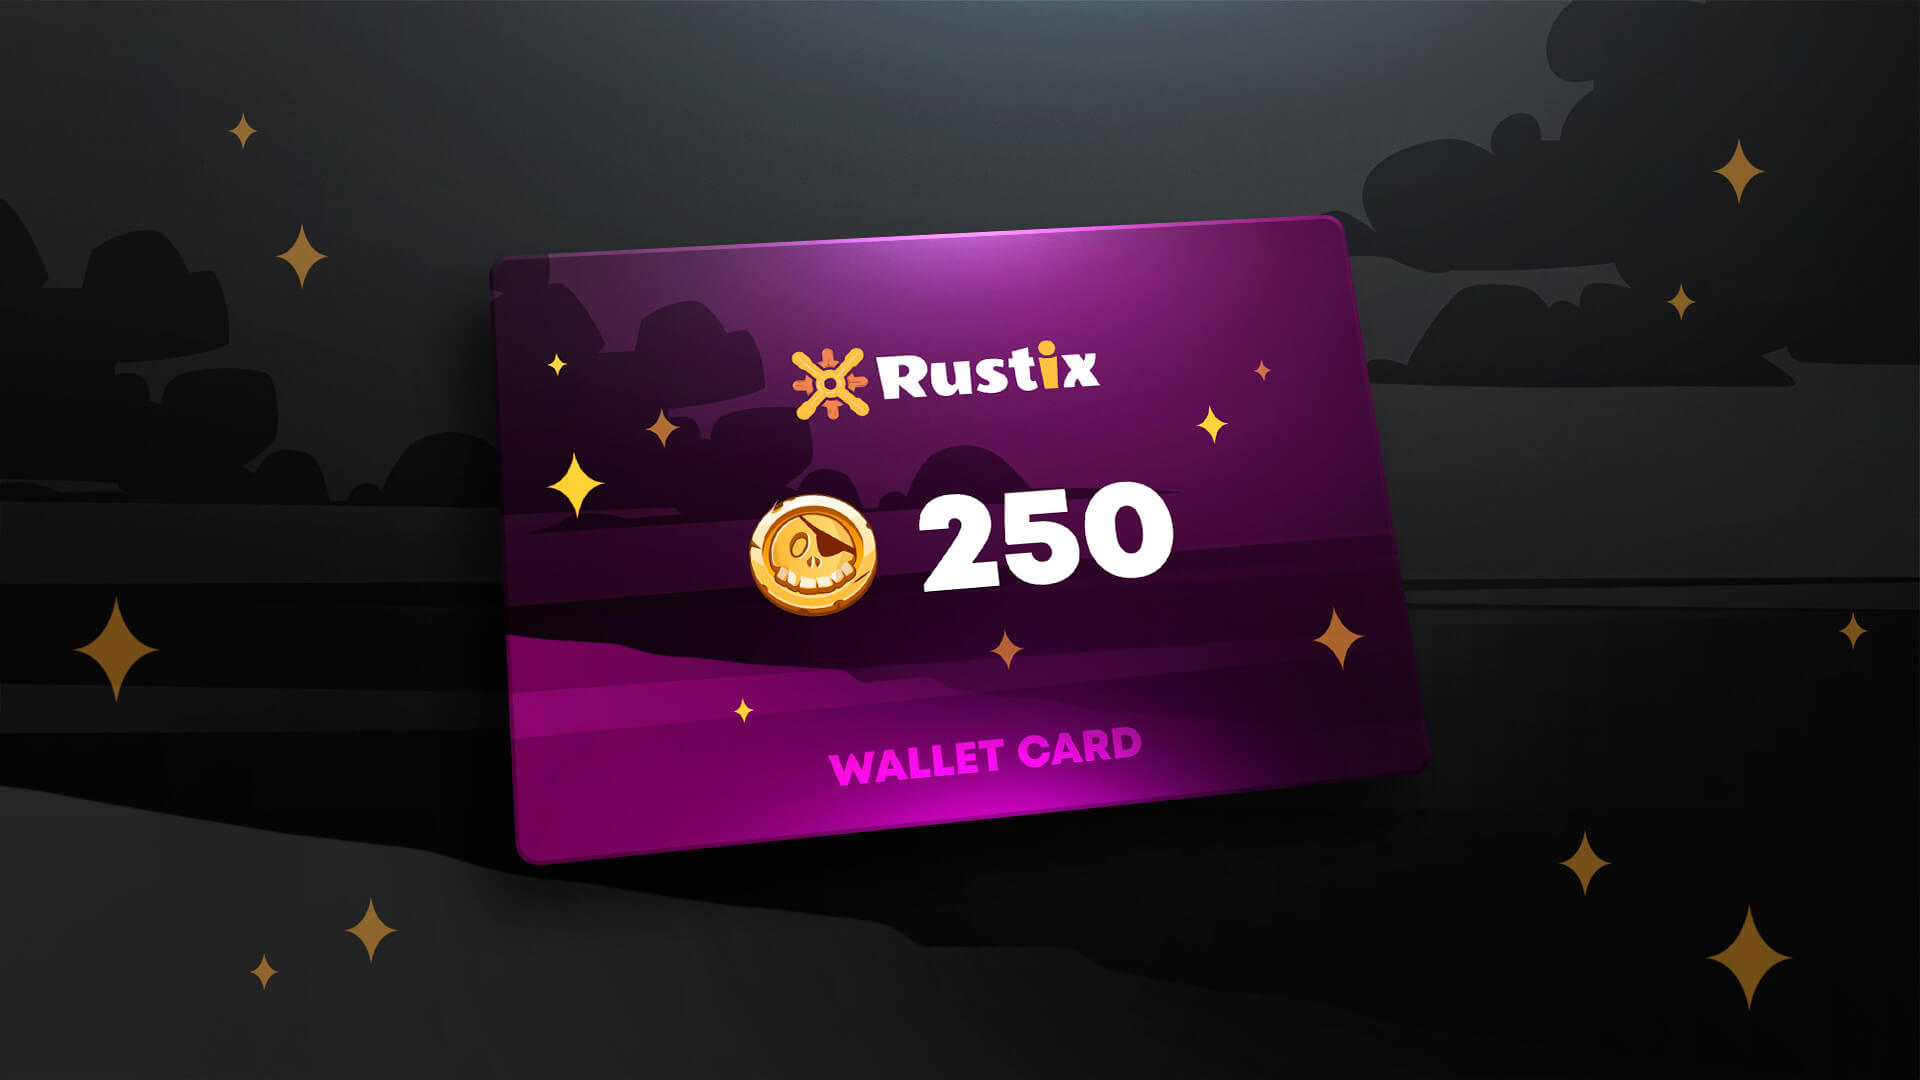 Rustix.io 250 USD Wallet Card Code, 274.57 usd